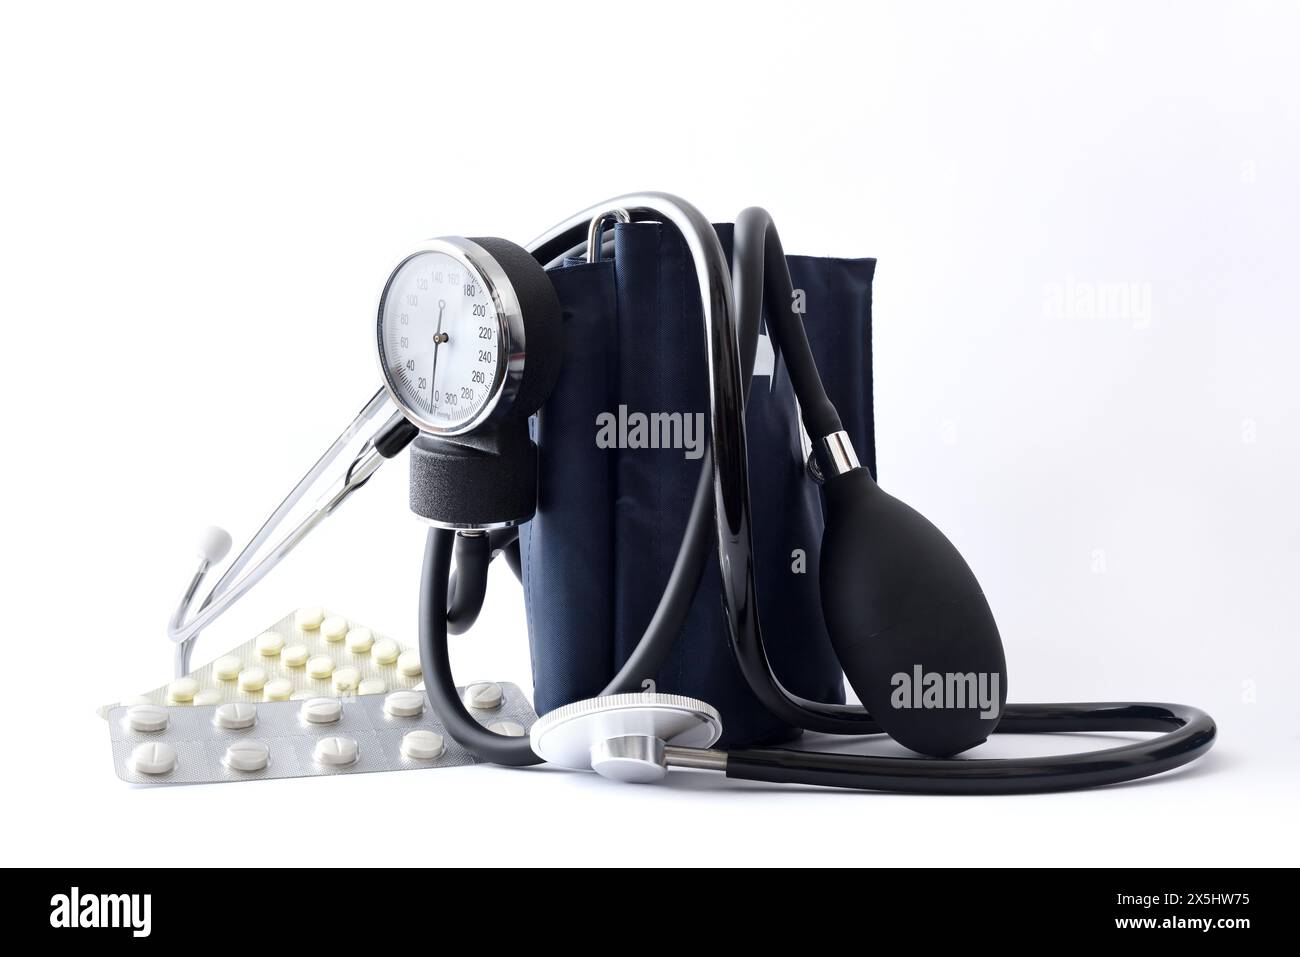 Medizinisches Kontrollkonzept mit manuellem Blutdruckmessgerät mit Stethoskop und Medikamenten auf isoliertem weißem Hintergrund. Vorderansicht. Stockfoto